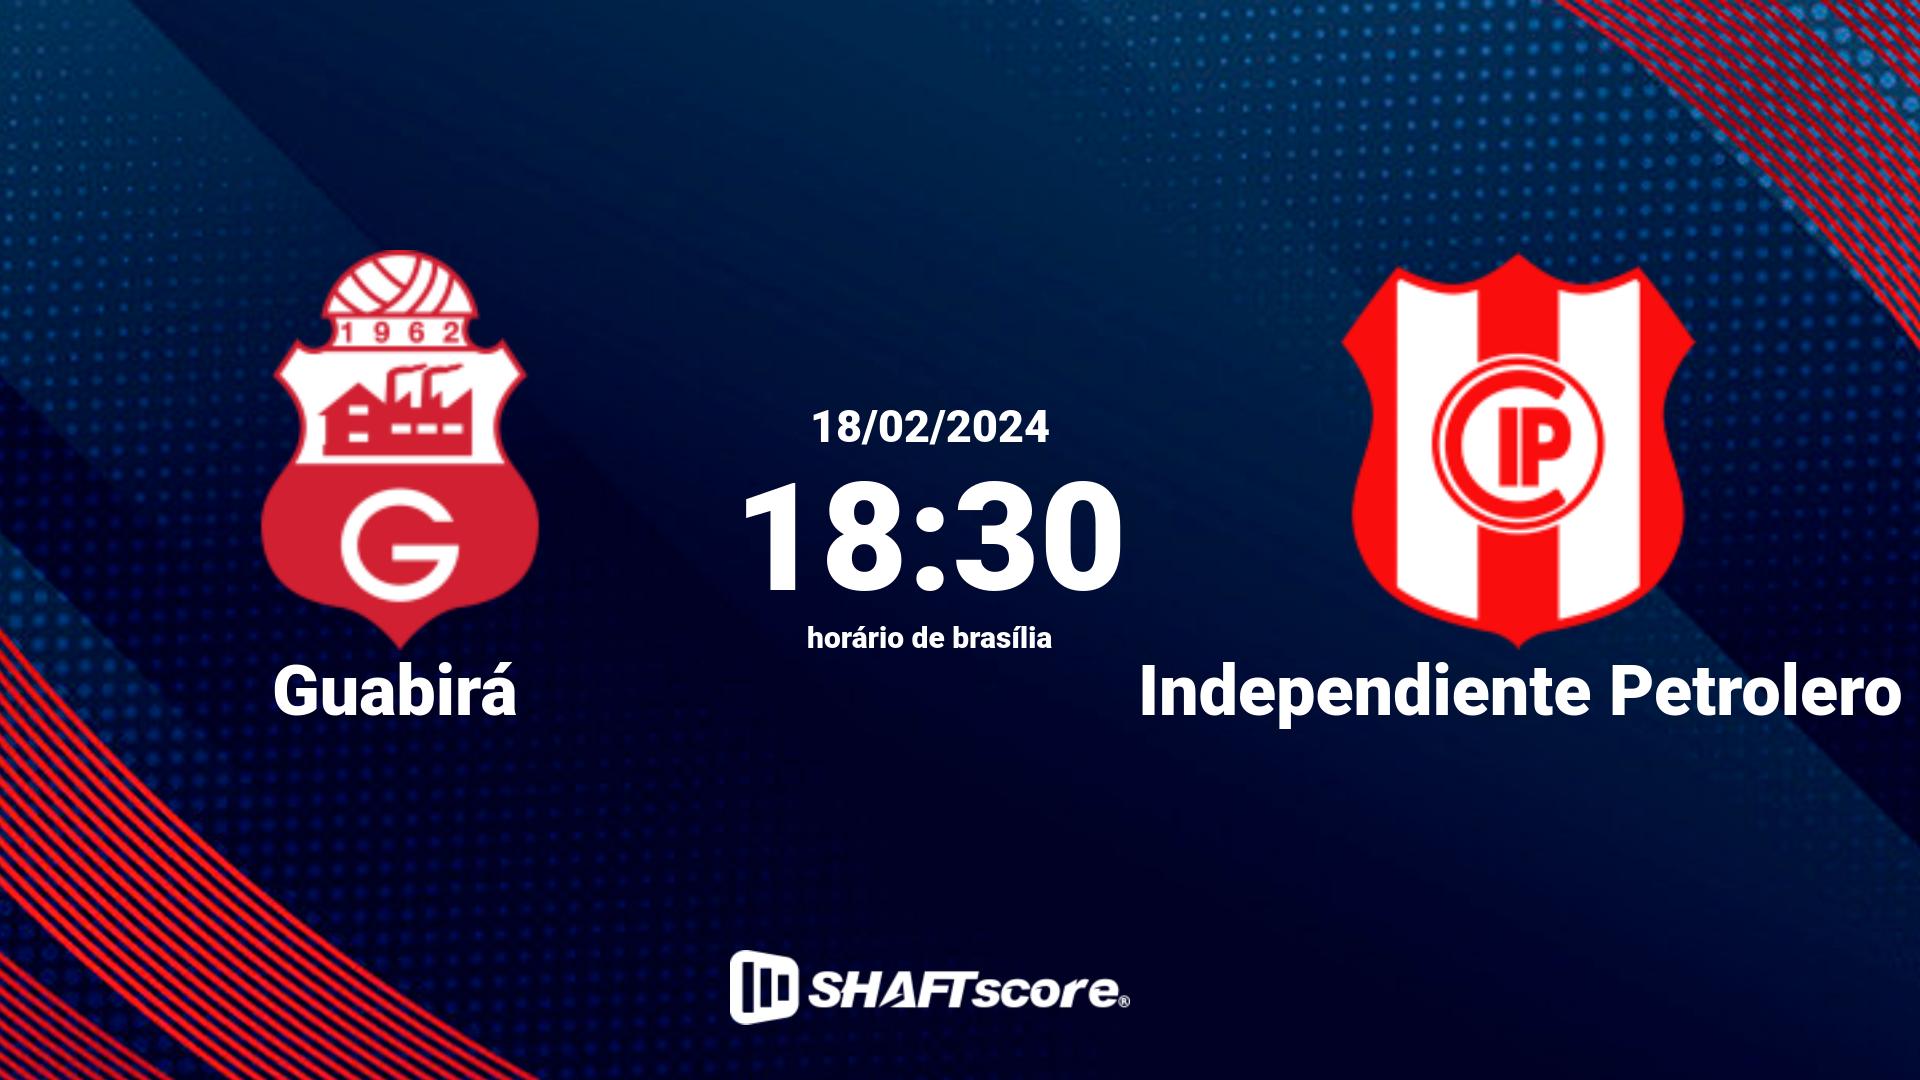 Estatísticas do jogo Guabirá vs Independiente Petrolero 18.02 18:30